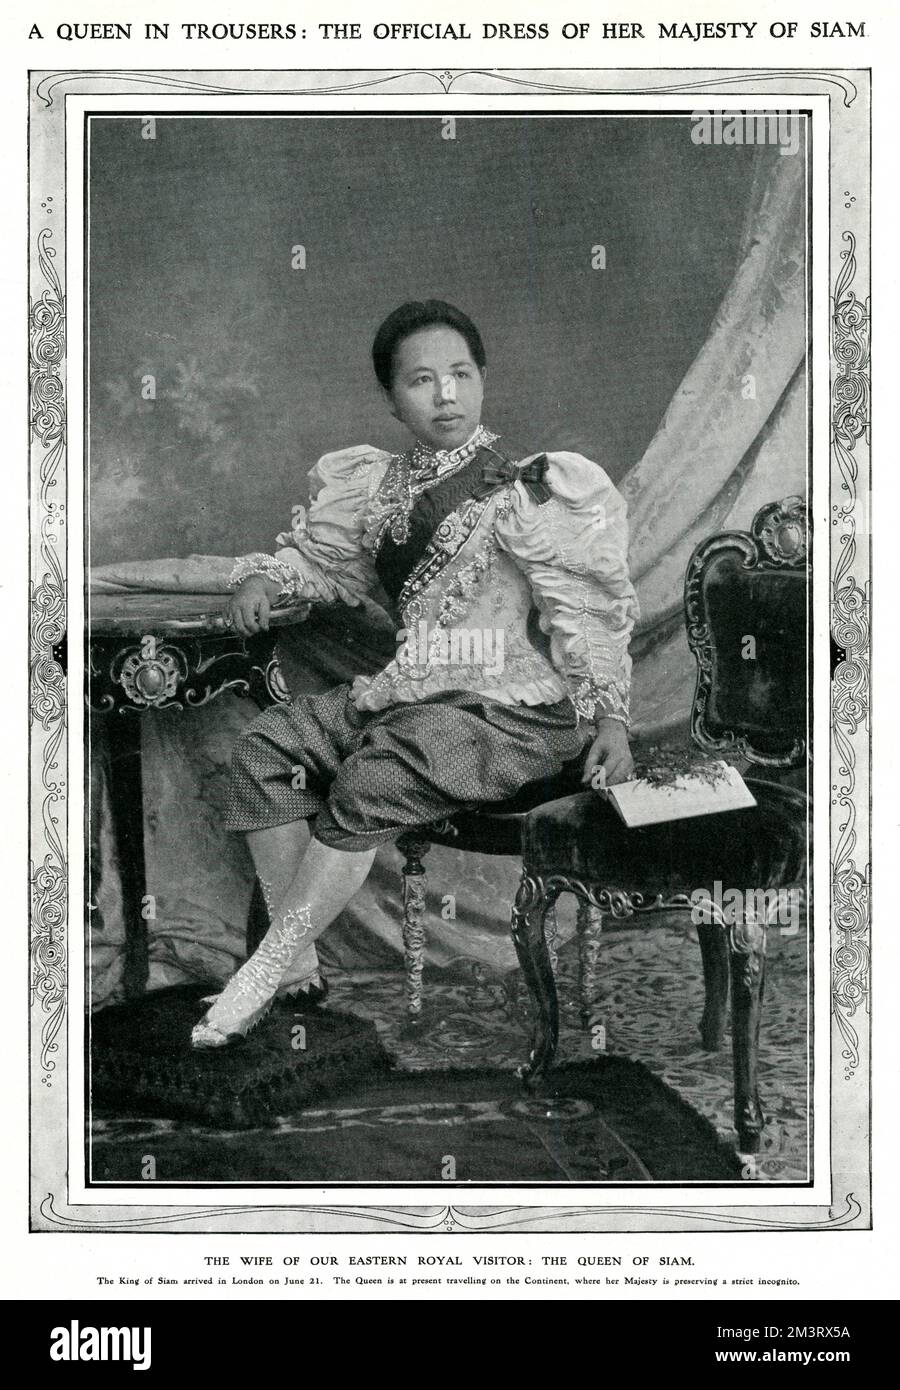 Una regina in pantaloni: Il vestito ufficiale di sua Maestà di Siam. La Regina del Siam, che viaggiava in incognito nel continente mentre suo marito, il Re del Siam, visitava Londra nel giugno 1907. Data: 1907 Foto Stock